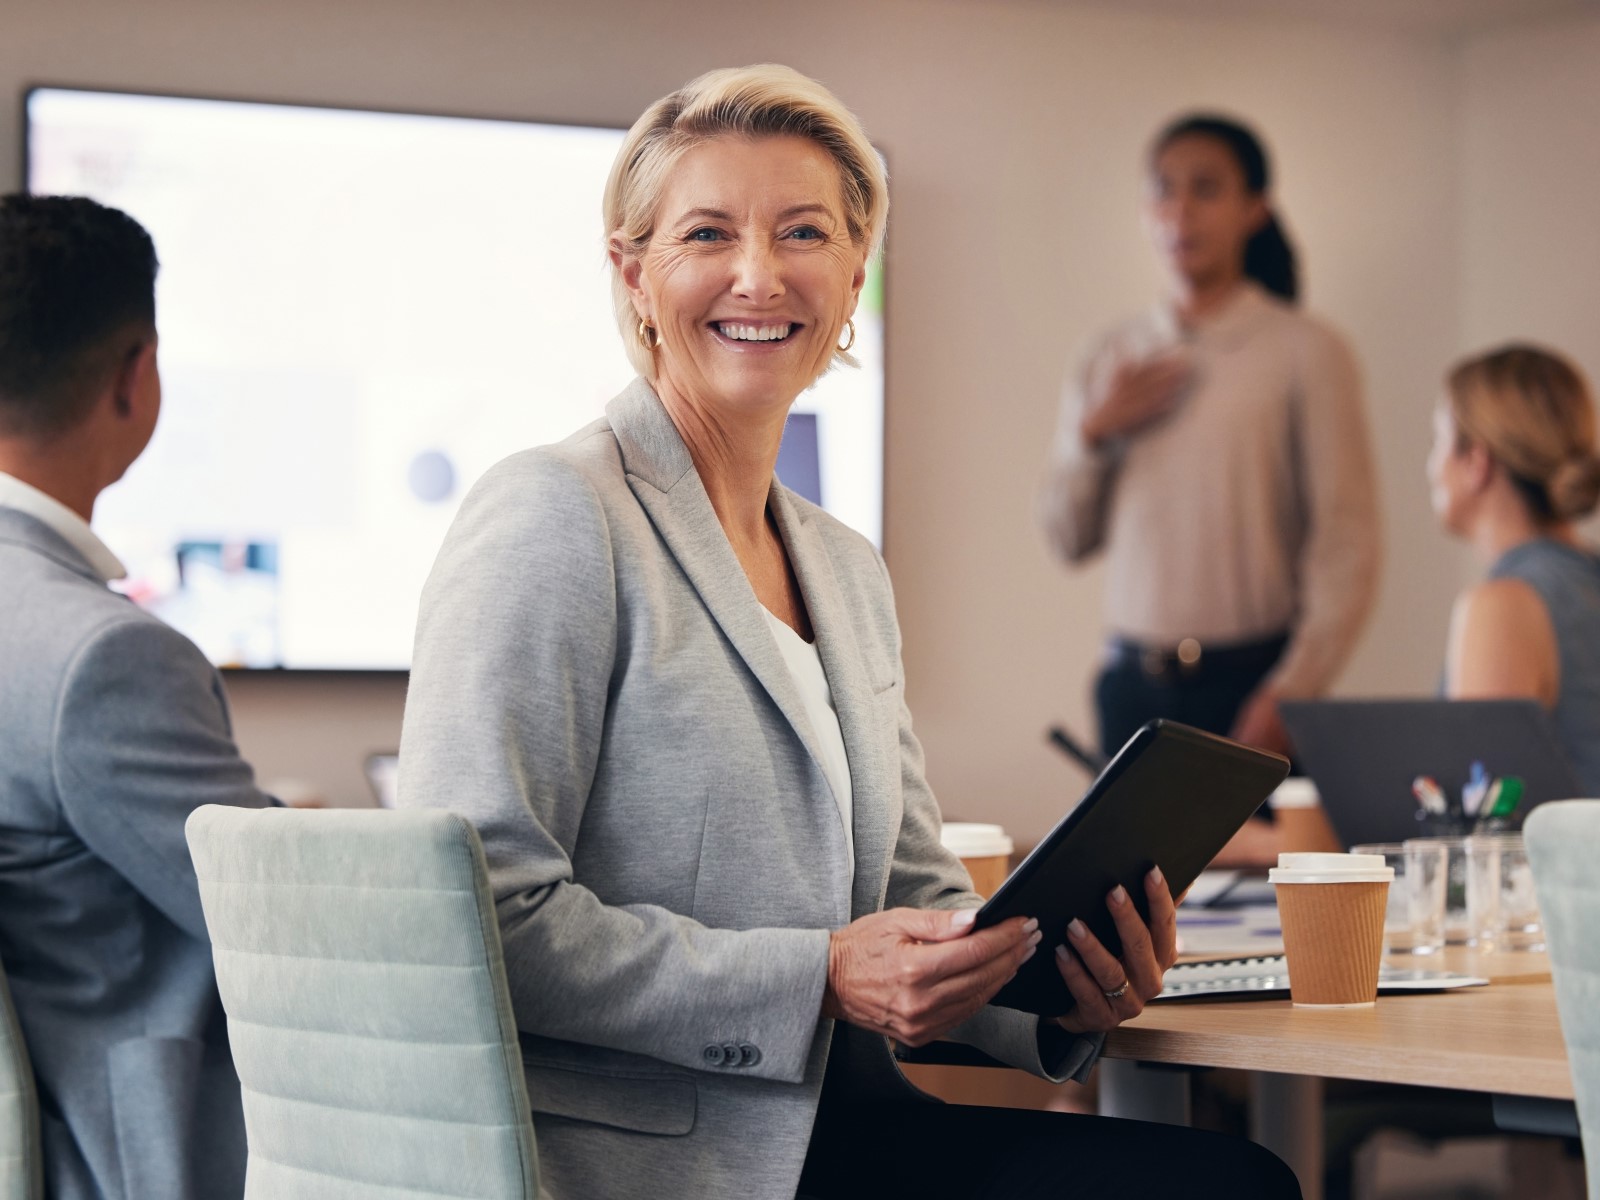 Kvinnlig företagare i mötesrum, tittar leende mot kamera